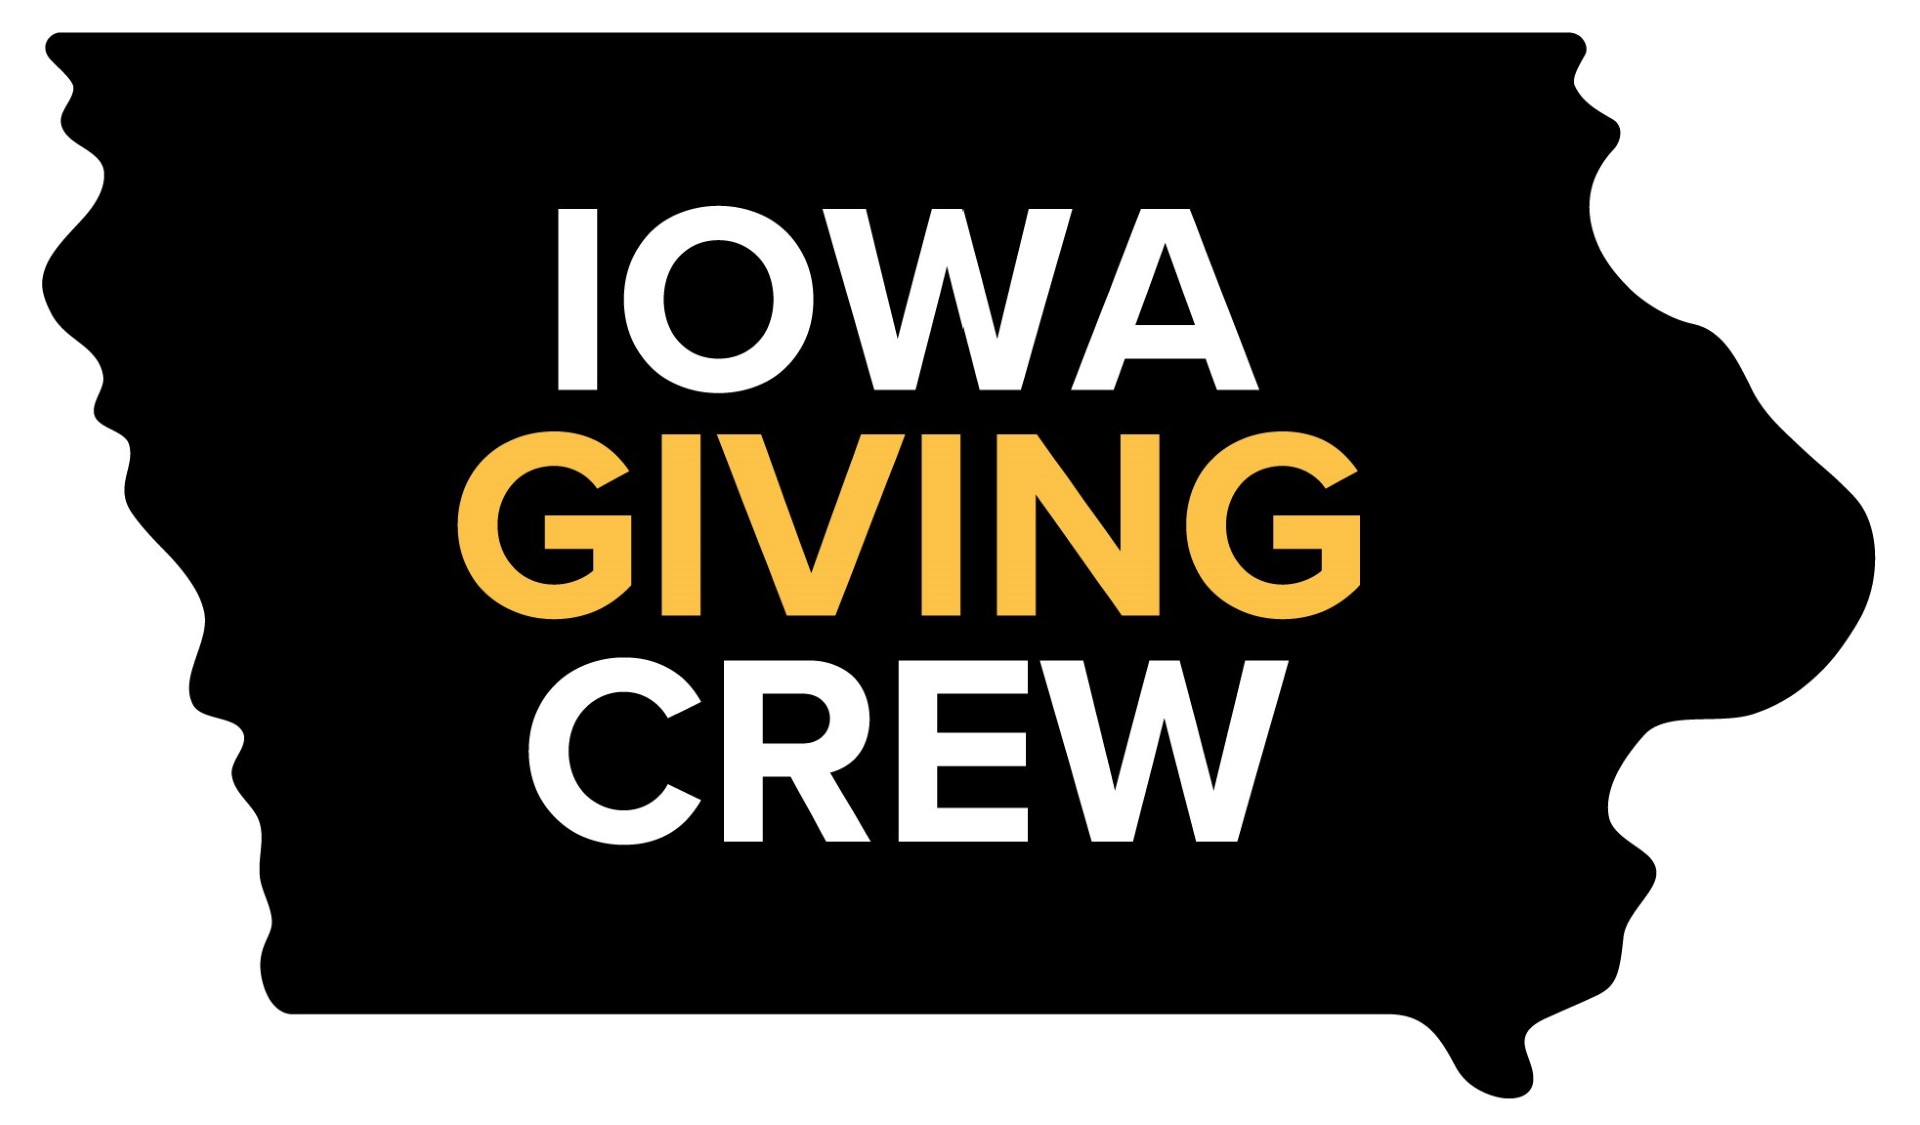 Iowa Giving Crew